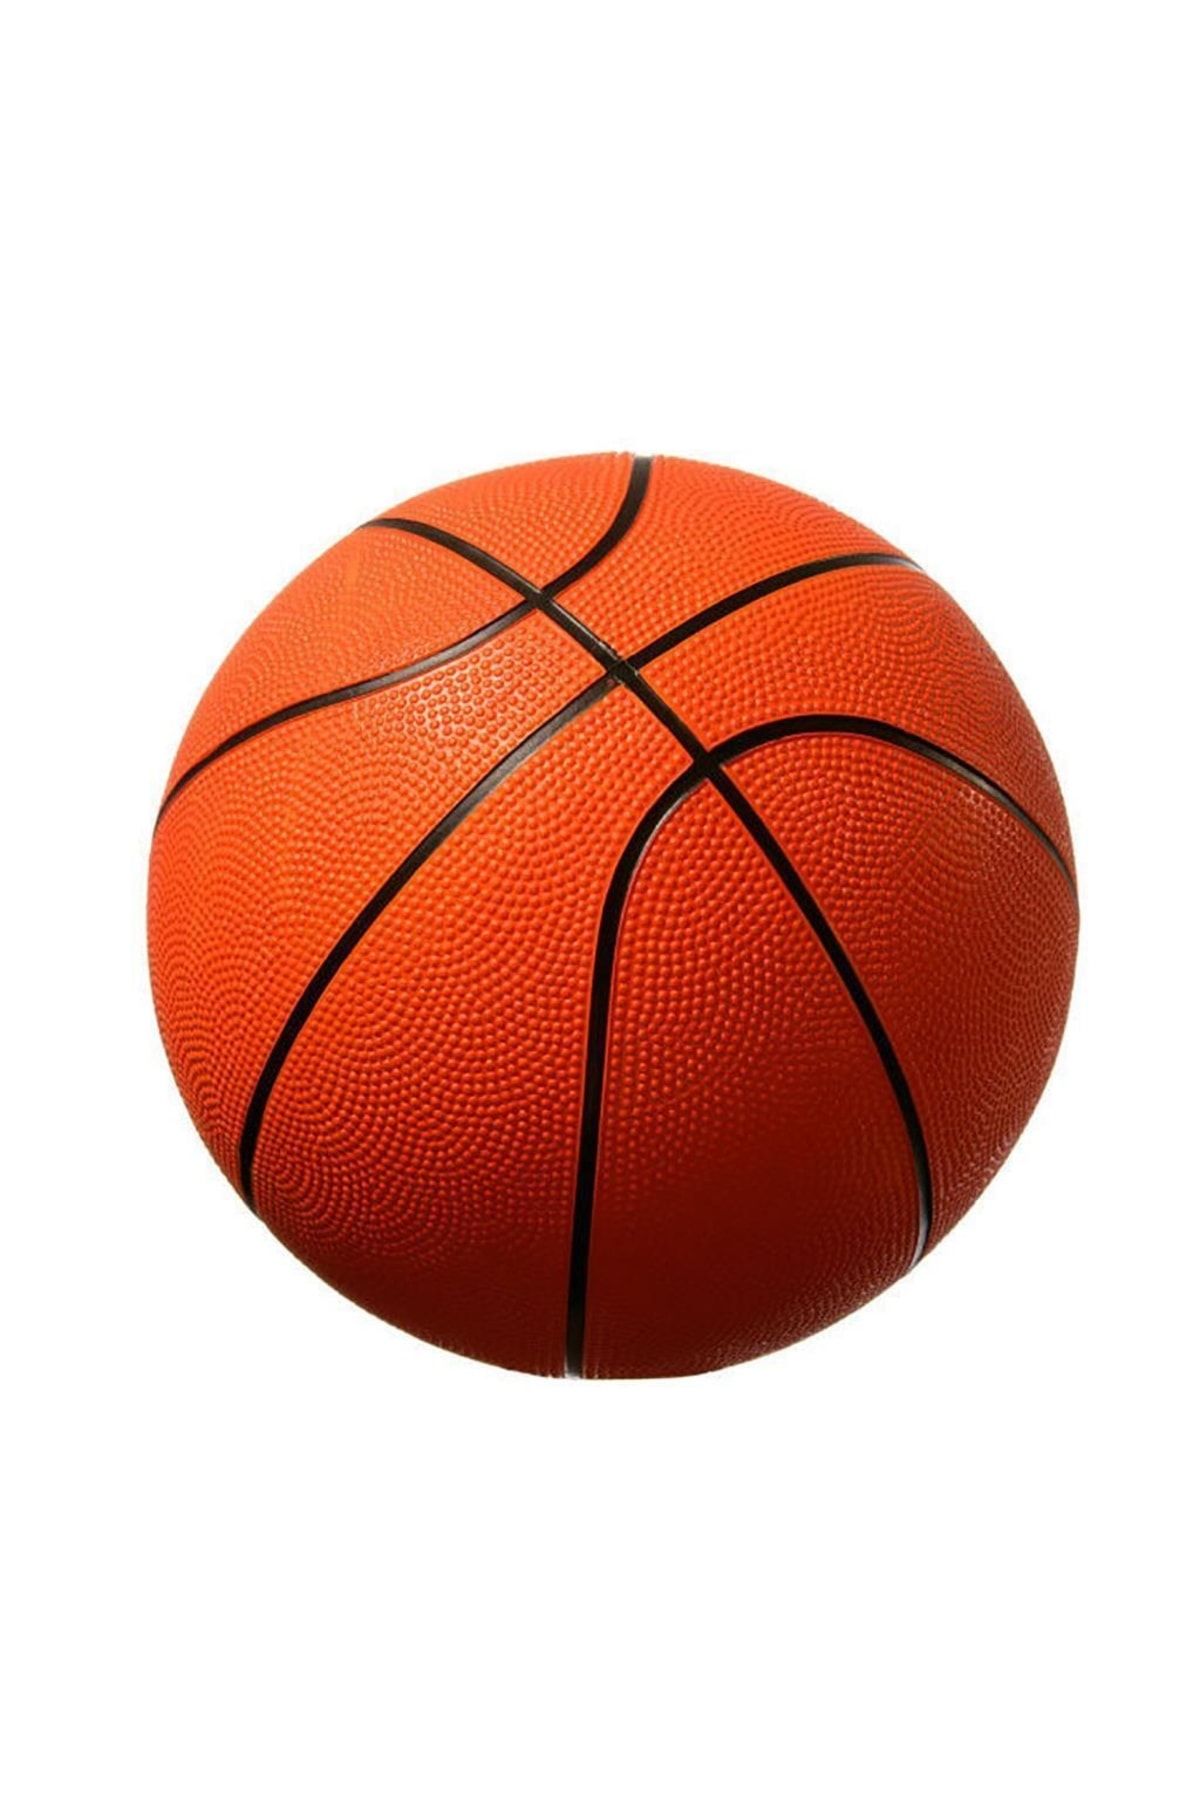 abnturk Kauçuk Malzeme 7 Numara Basketbol Topu Standart Boy Iç Ve Dış Mekanda Kullanıma Uygun